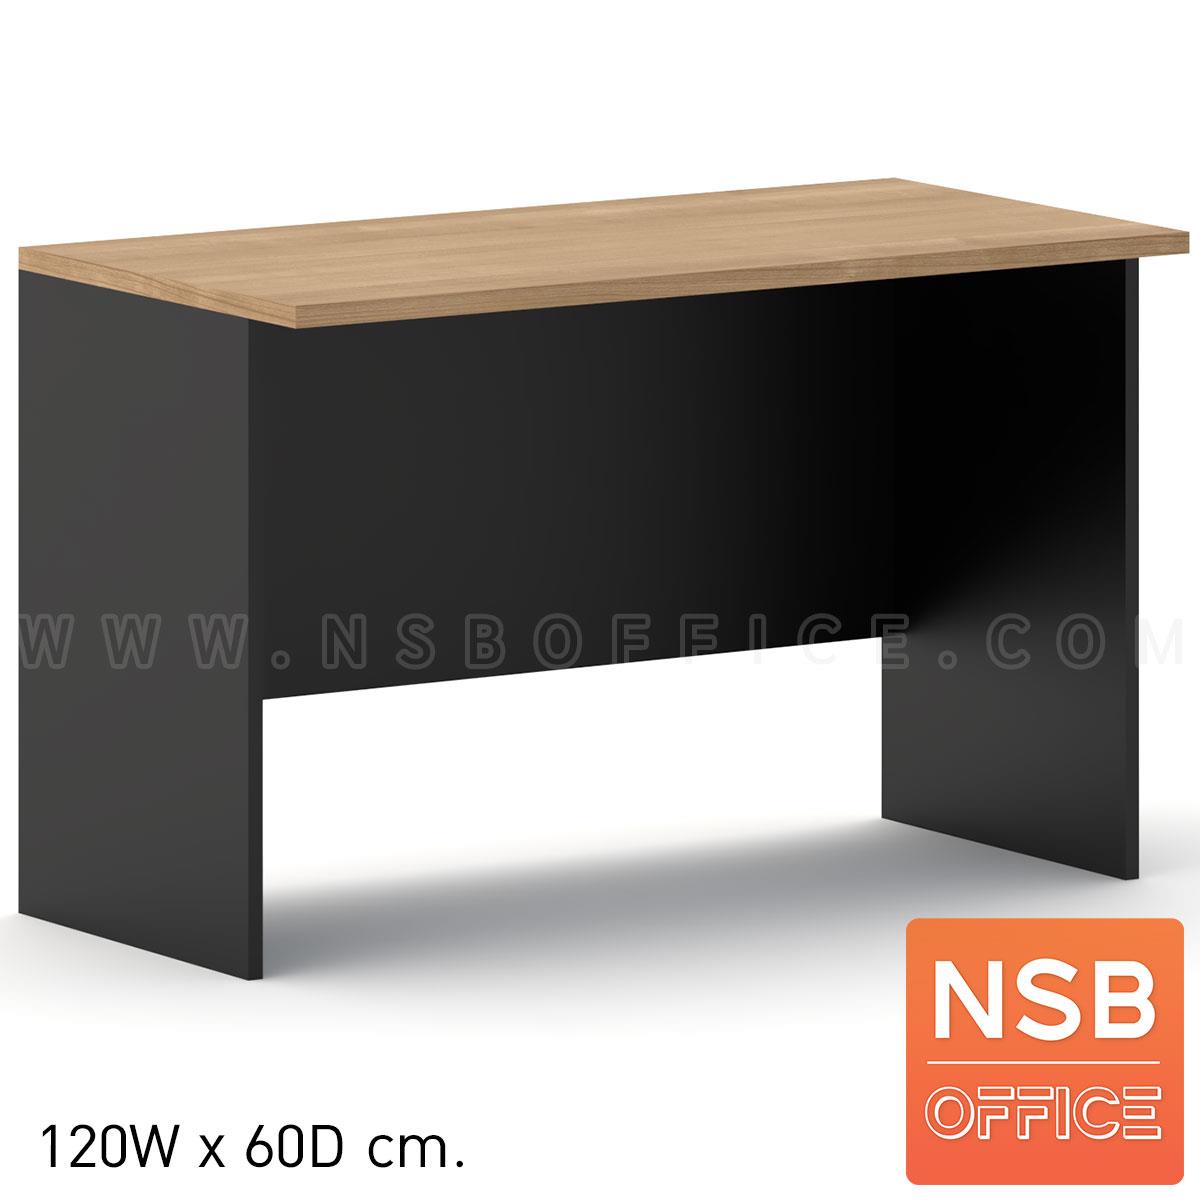 โต๊ะประชุมหน้าตรง 60D cm.  ขนาด 80W ,120W ,150W ,180W ,210W cm. เมลามีน